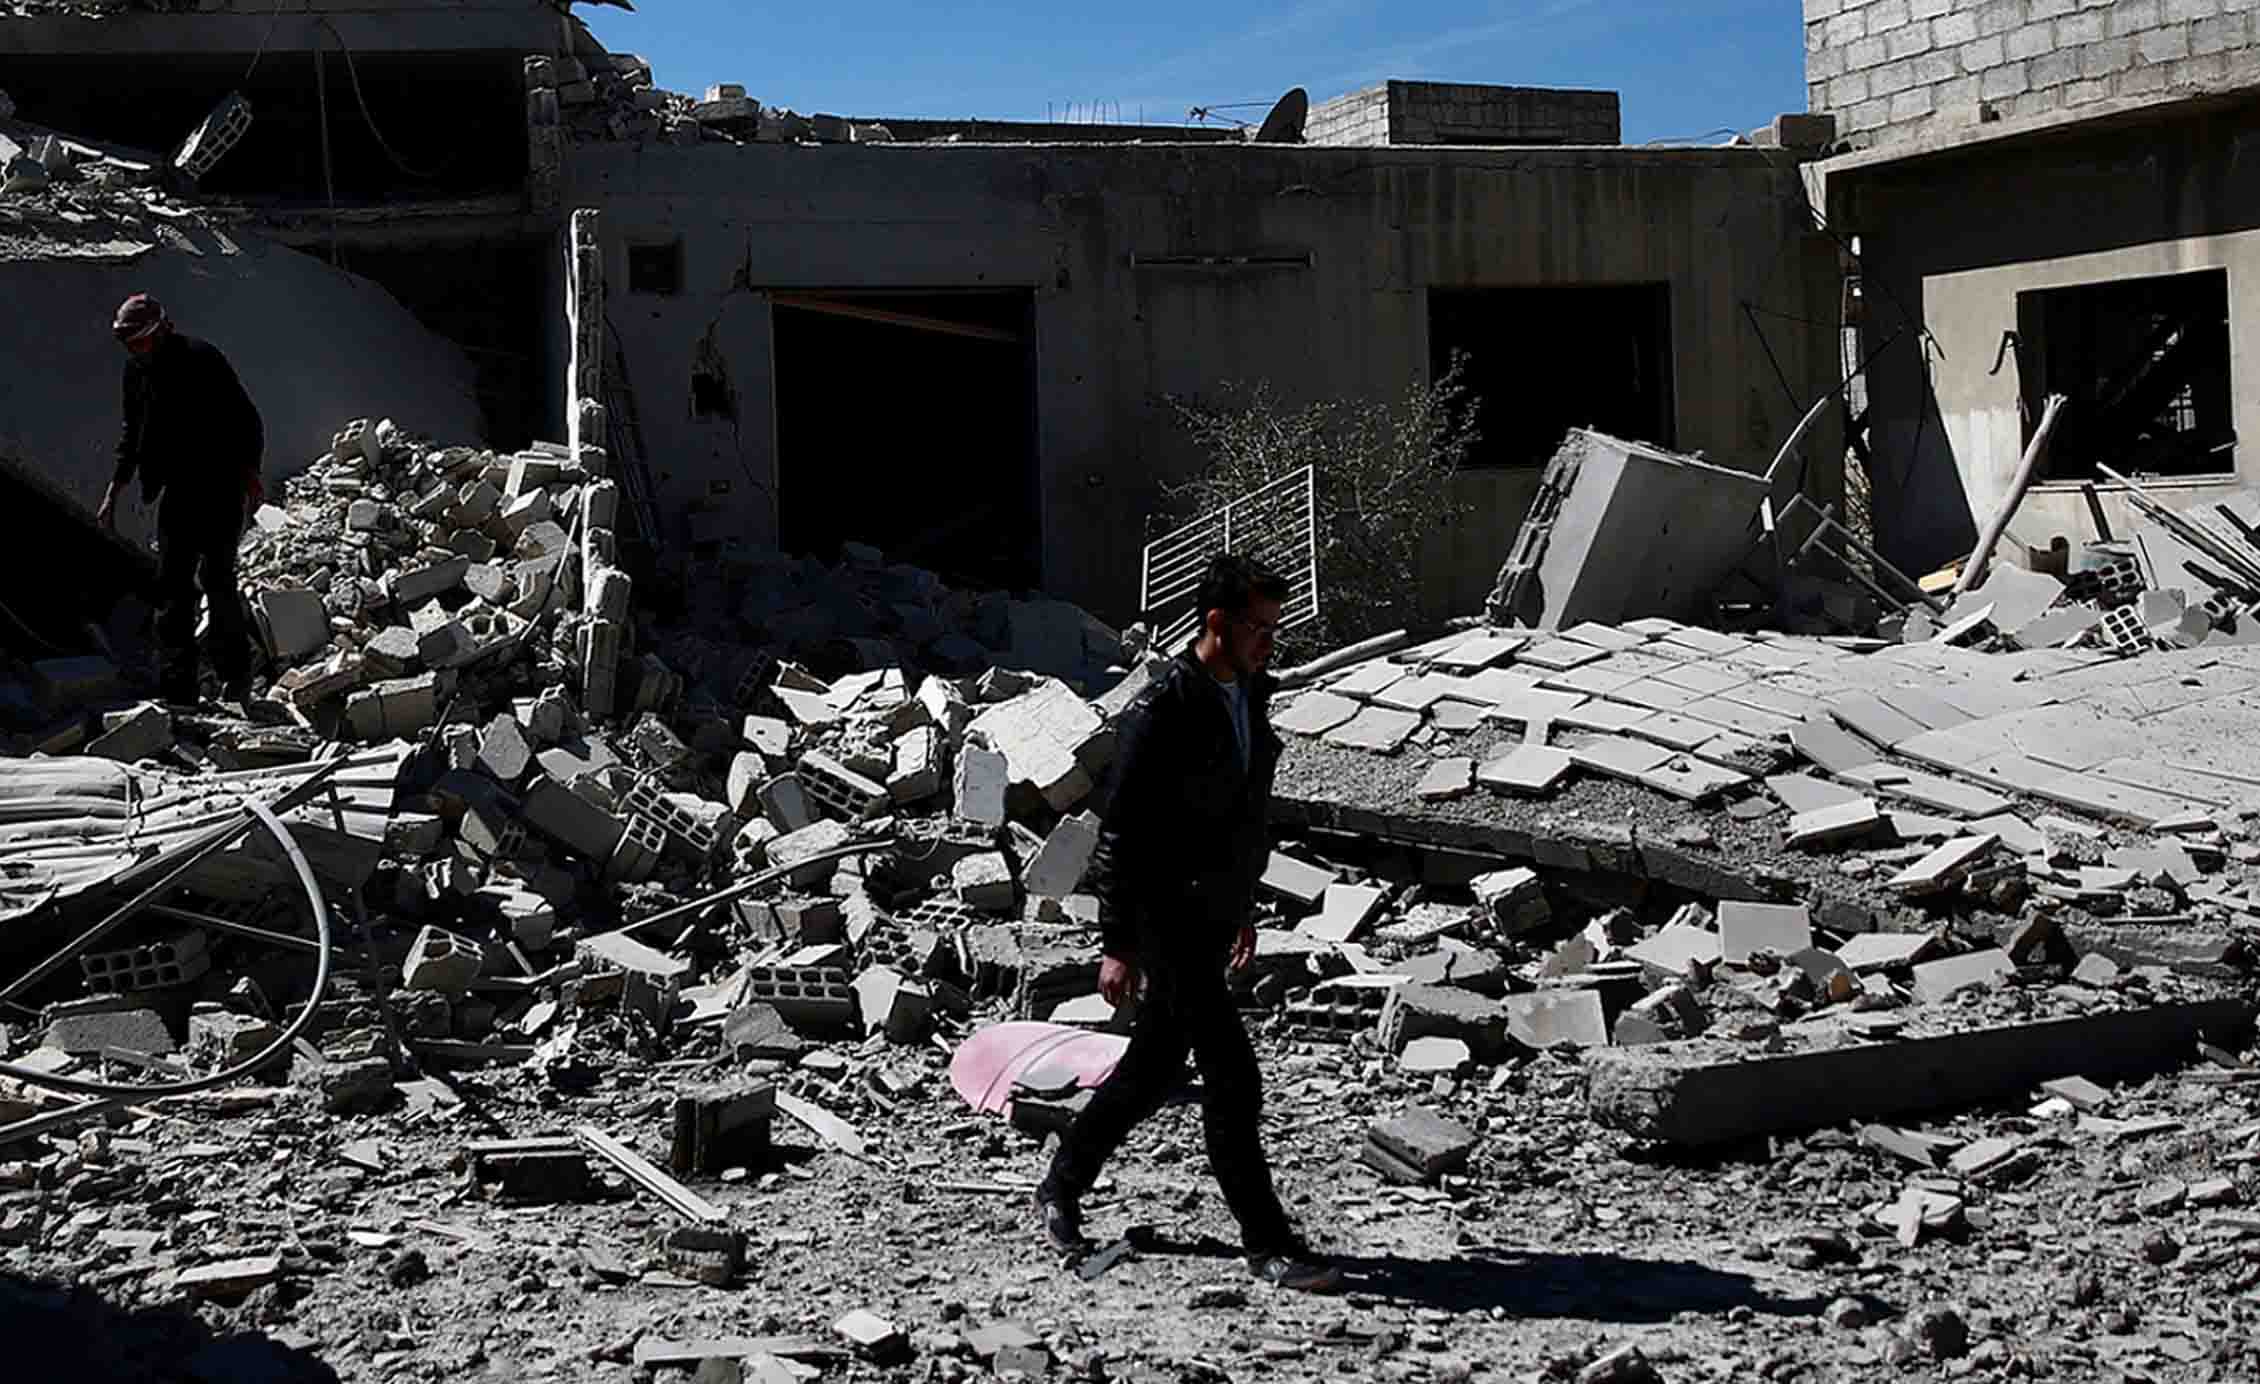 Ambos países europeos solicitaron el mitín a la ONU con carácter de urgencia tras el bombardeo con gas venenoso en una localidad siria